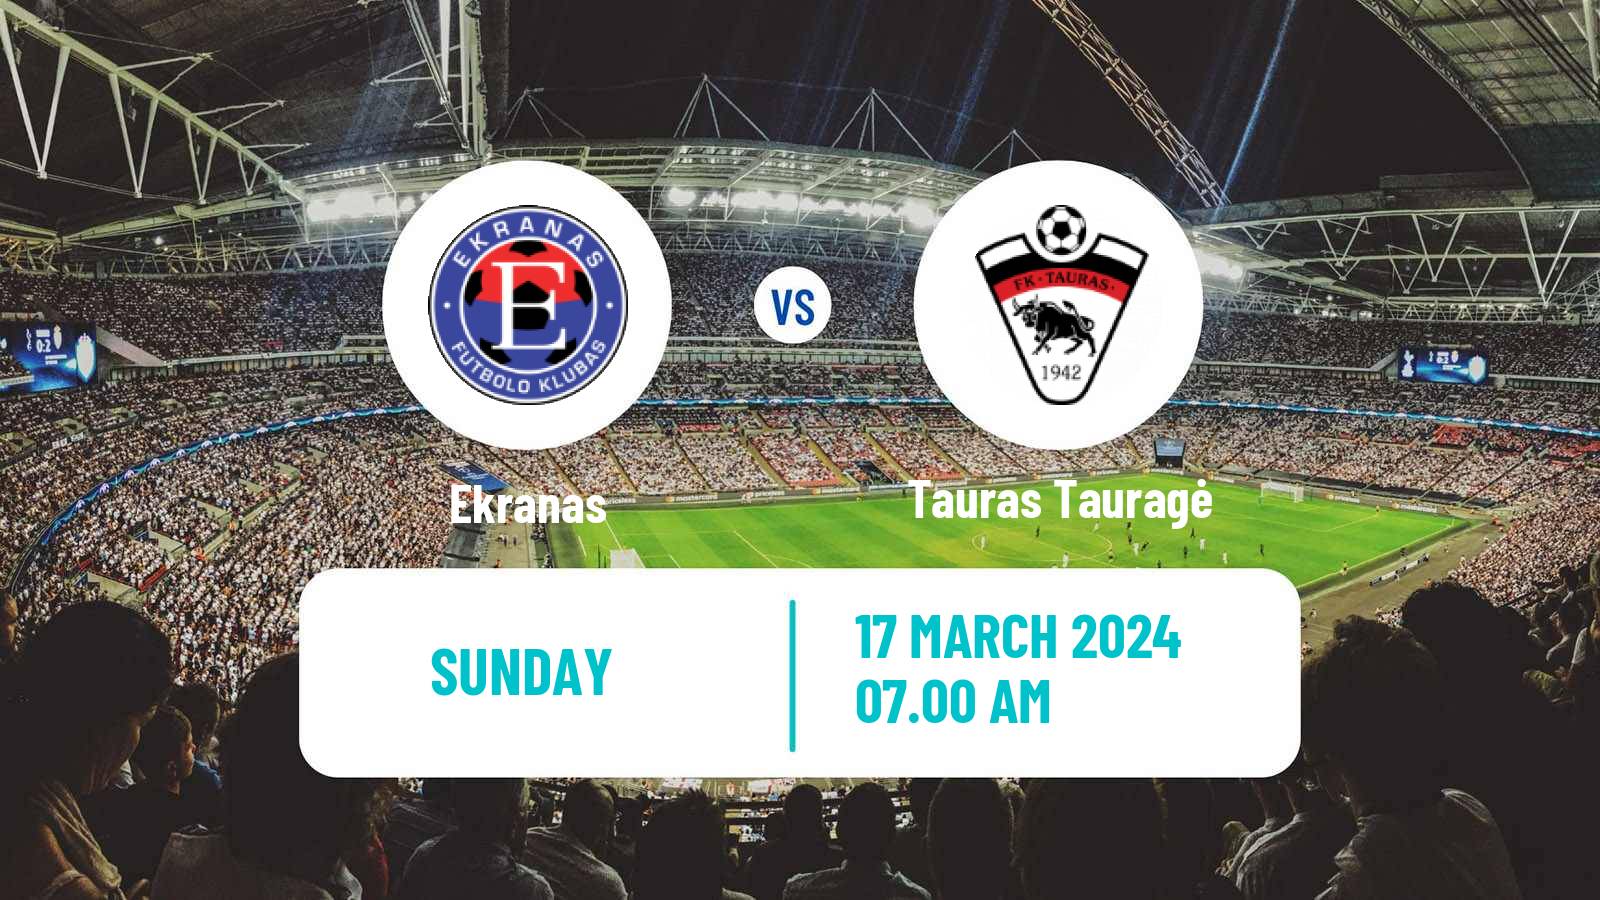 Soccer Lithuanian Division 2 Ekranas - Tauras Tauragė